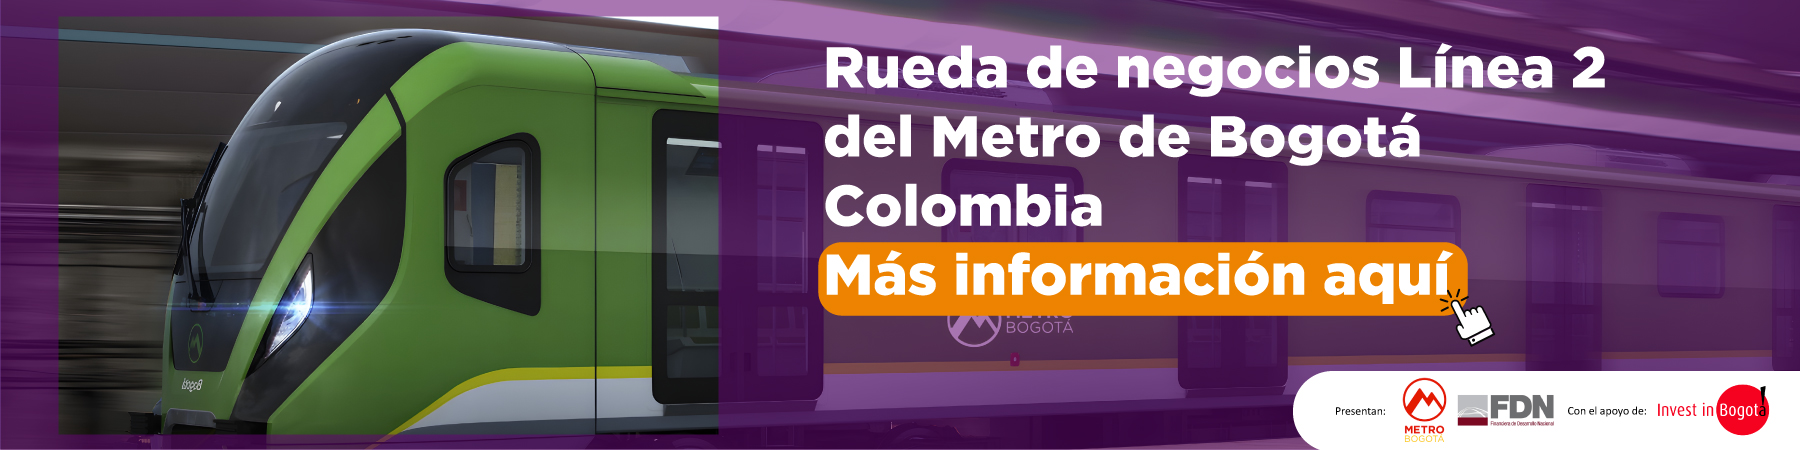 Rueda de negocios Línea 2 del Metro de Bogotá. Colombia. Más información aquí